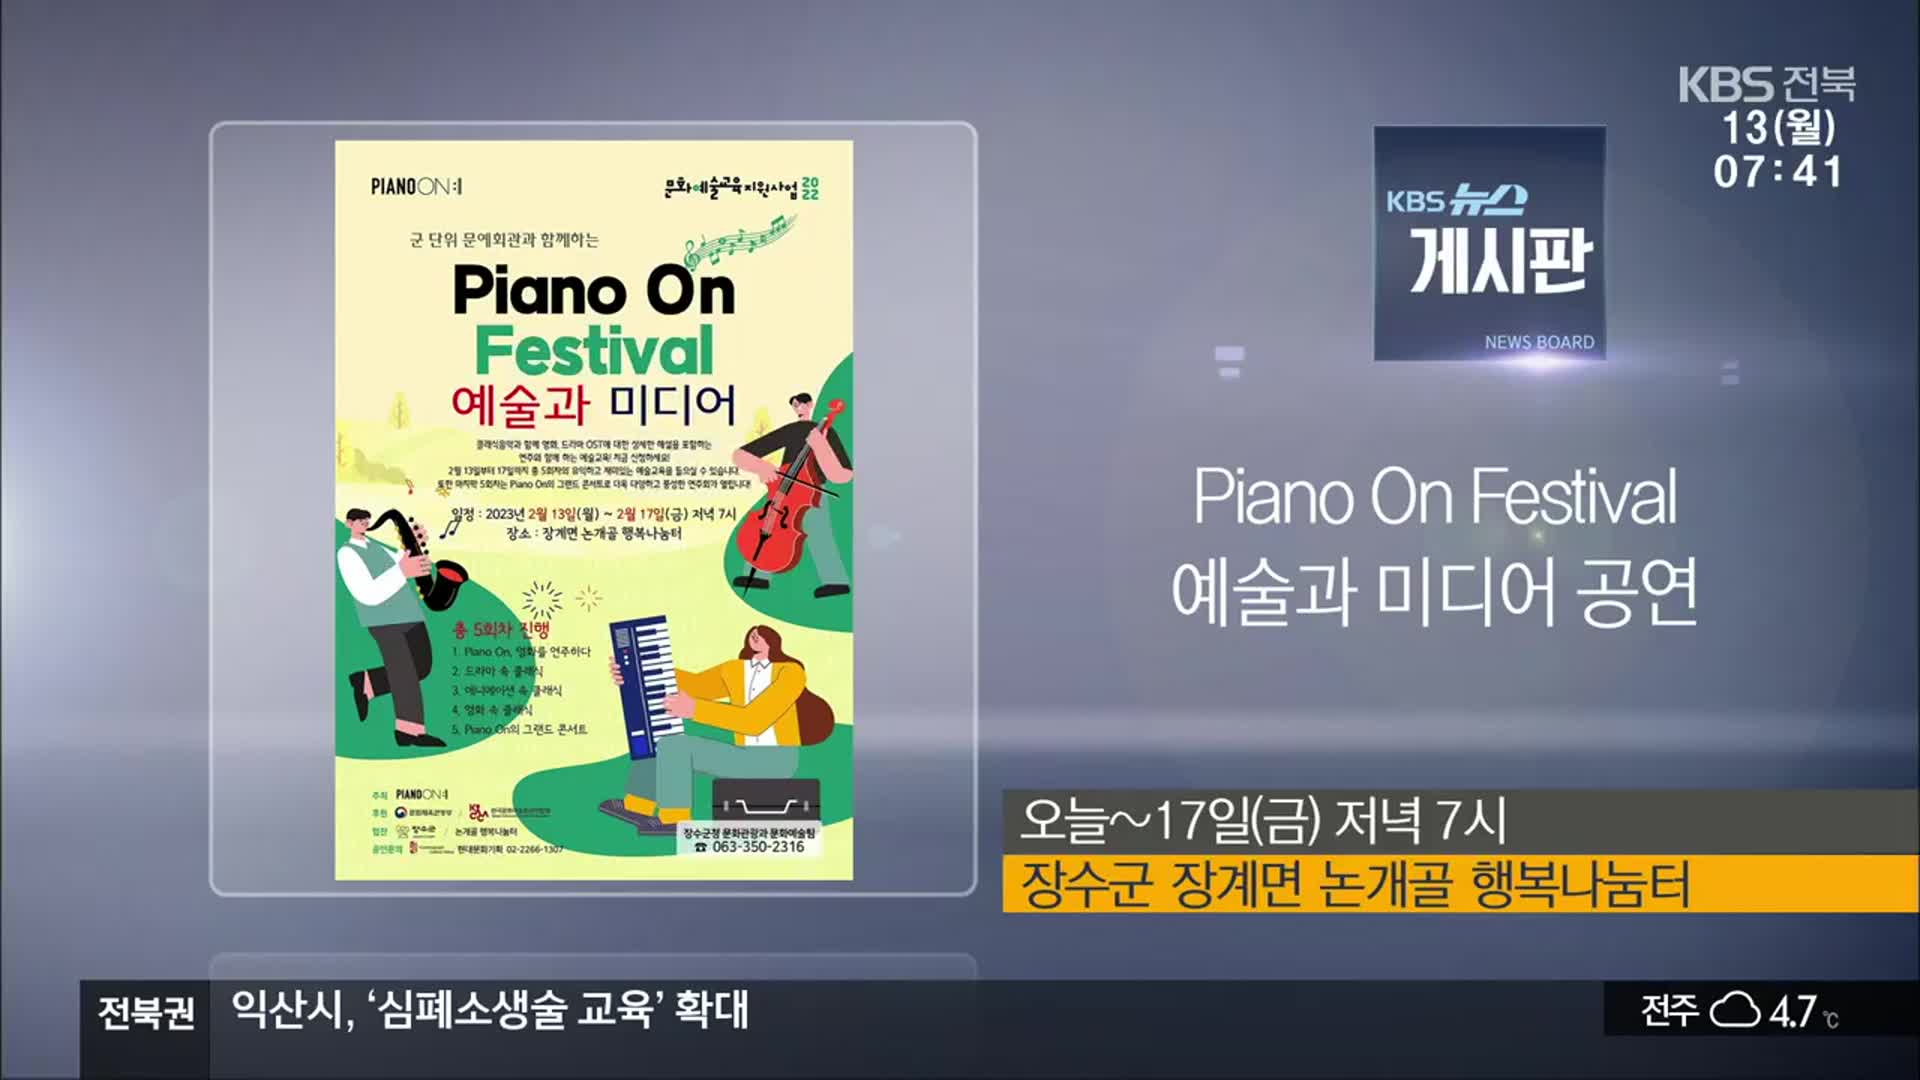 [게시판] Piano On Festival 예술과 미디어 공연 외